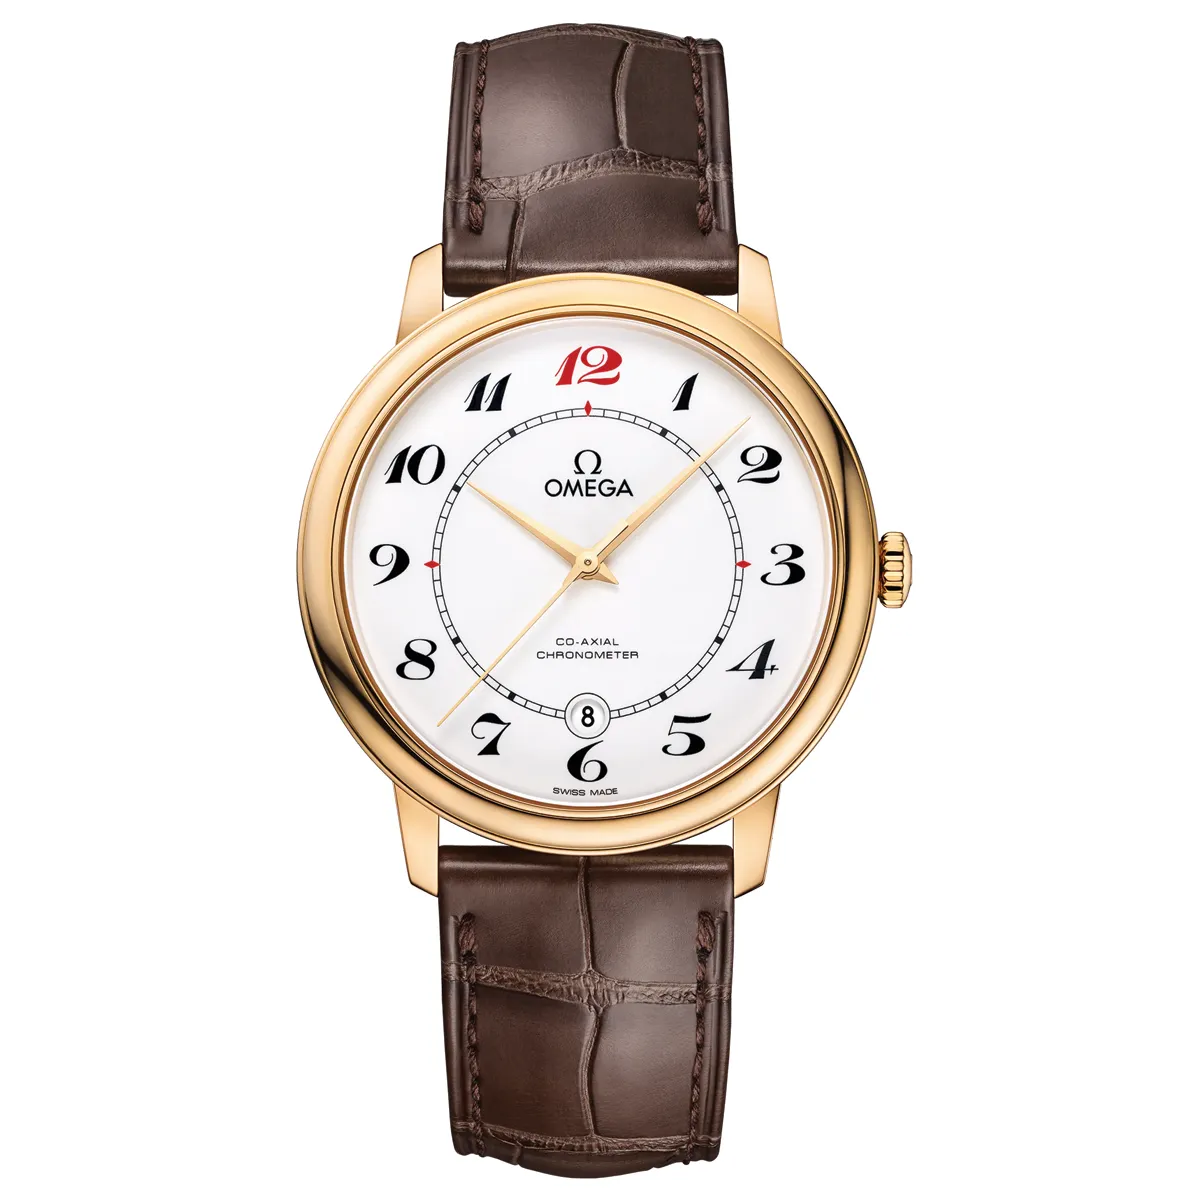 Đồng hồ Omega De Ville 50th Anniversary Prestige Co-Axial Chronometer 424.53.40.20.04.005 mặt số màu trắng. Dây đeo bằng da. Thân vỏ bằng vàng khối 18kt.